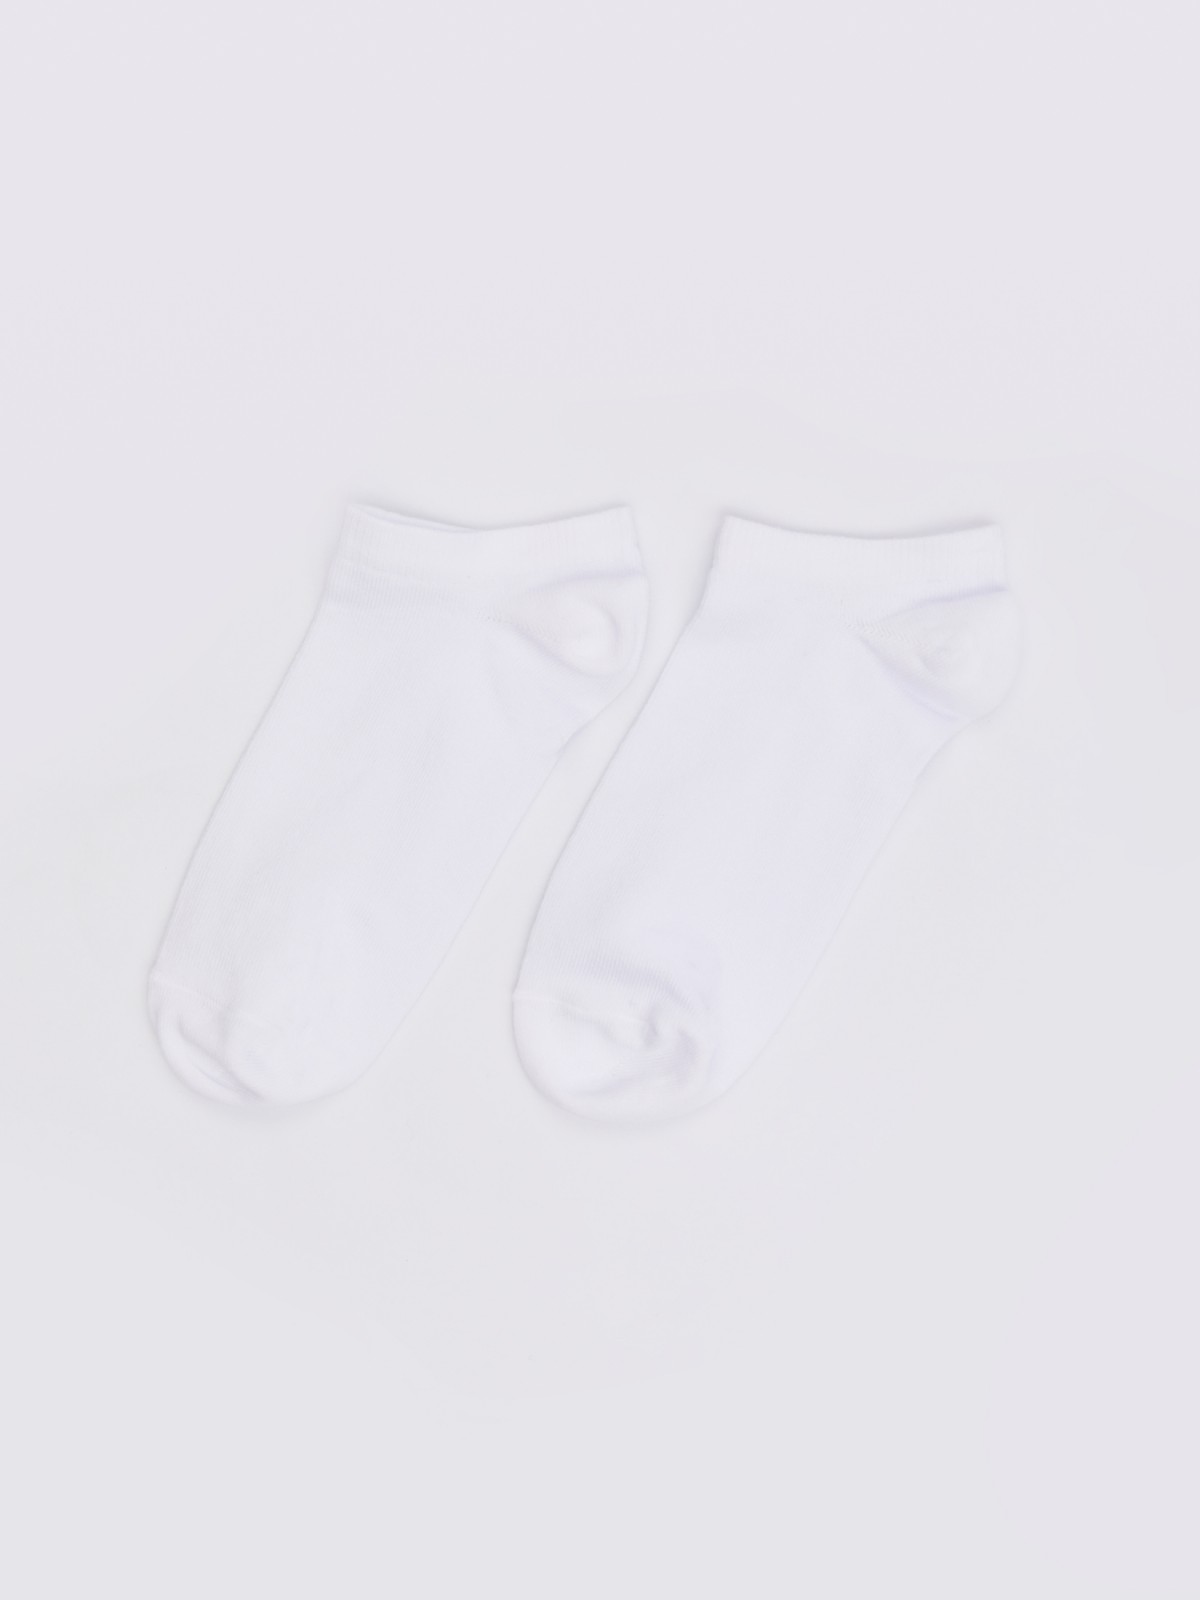 Короткие белые хлопковые носки zolla белого цвета